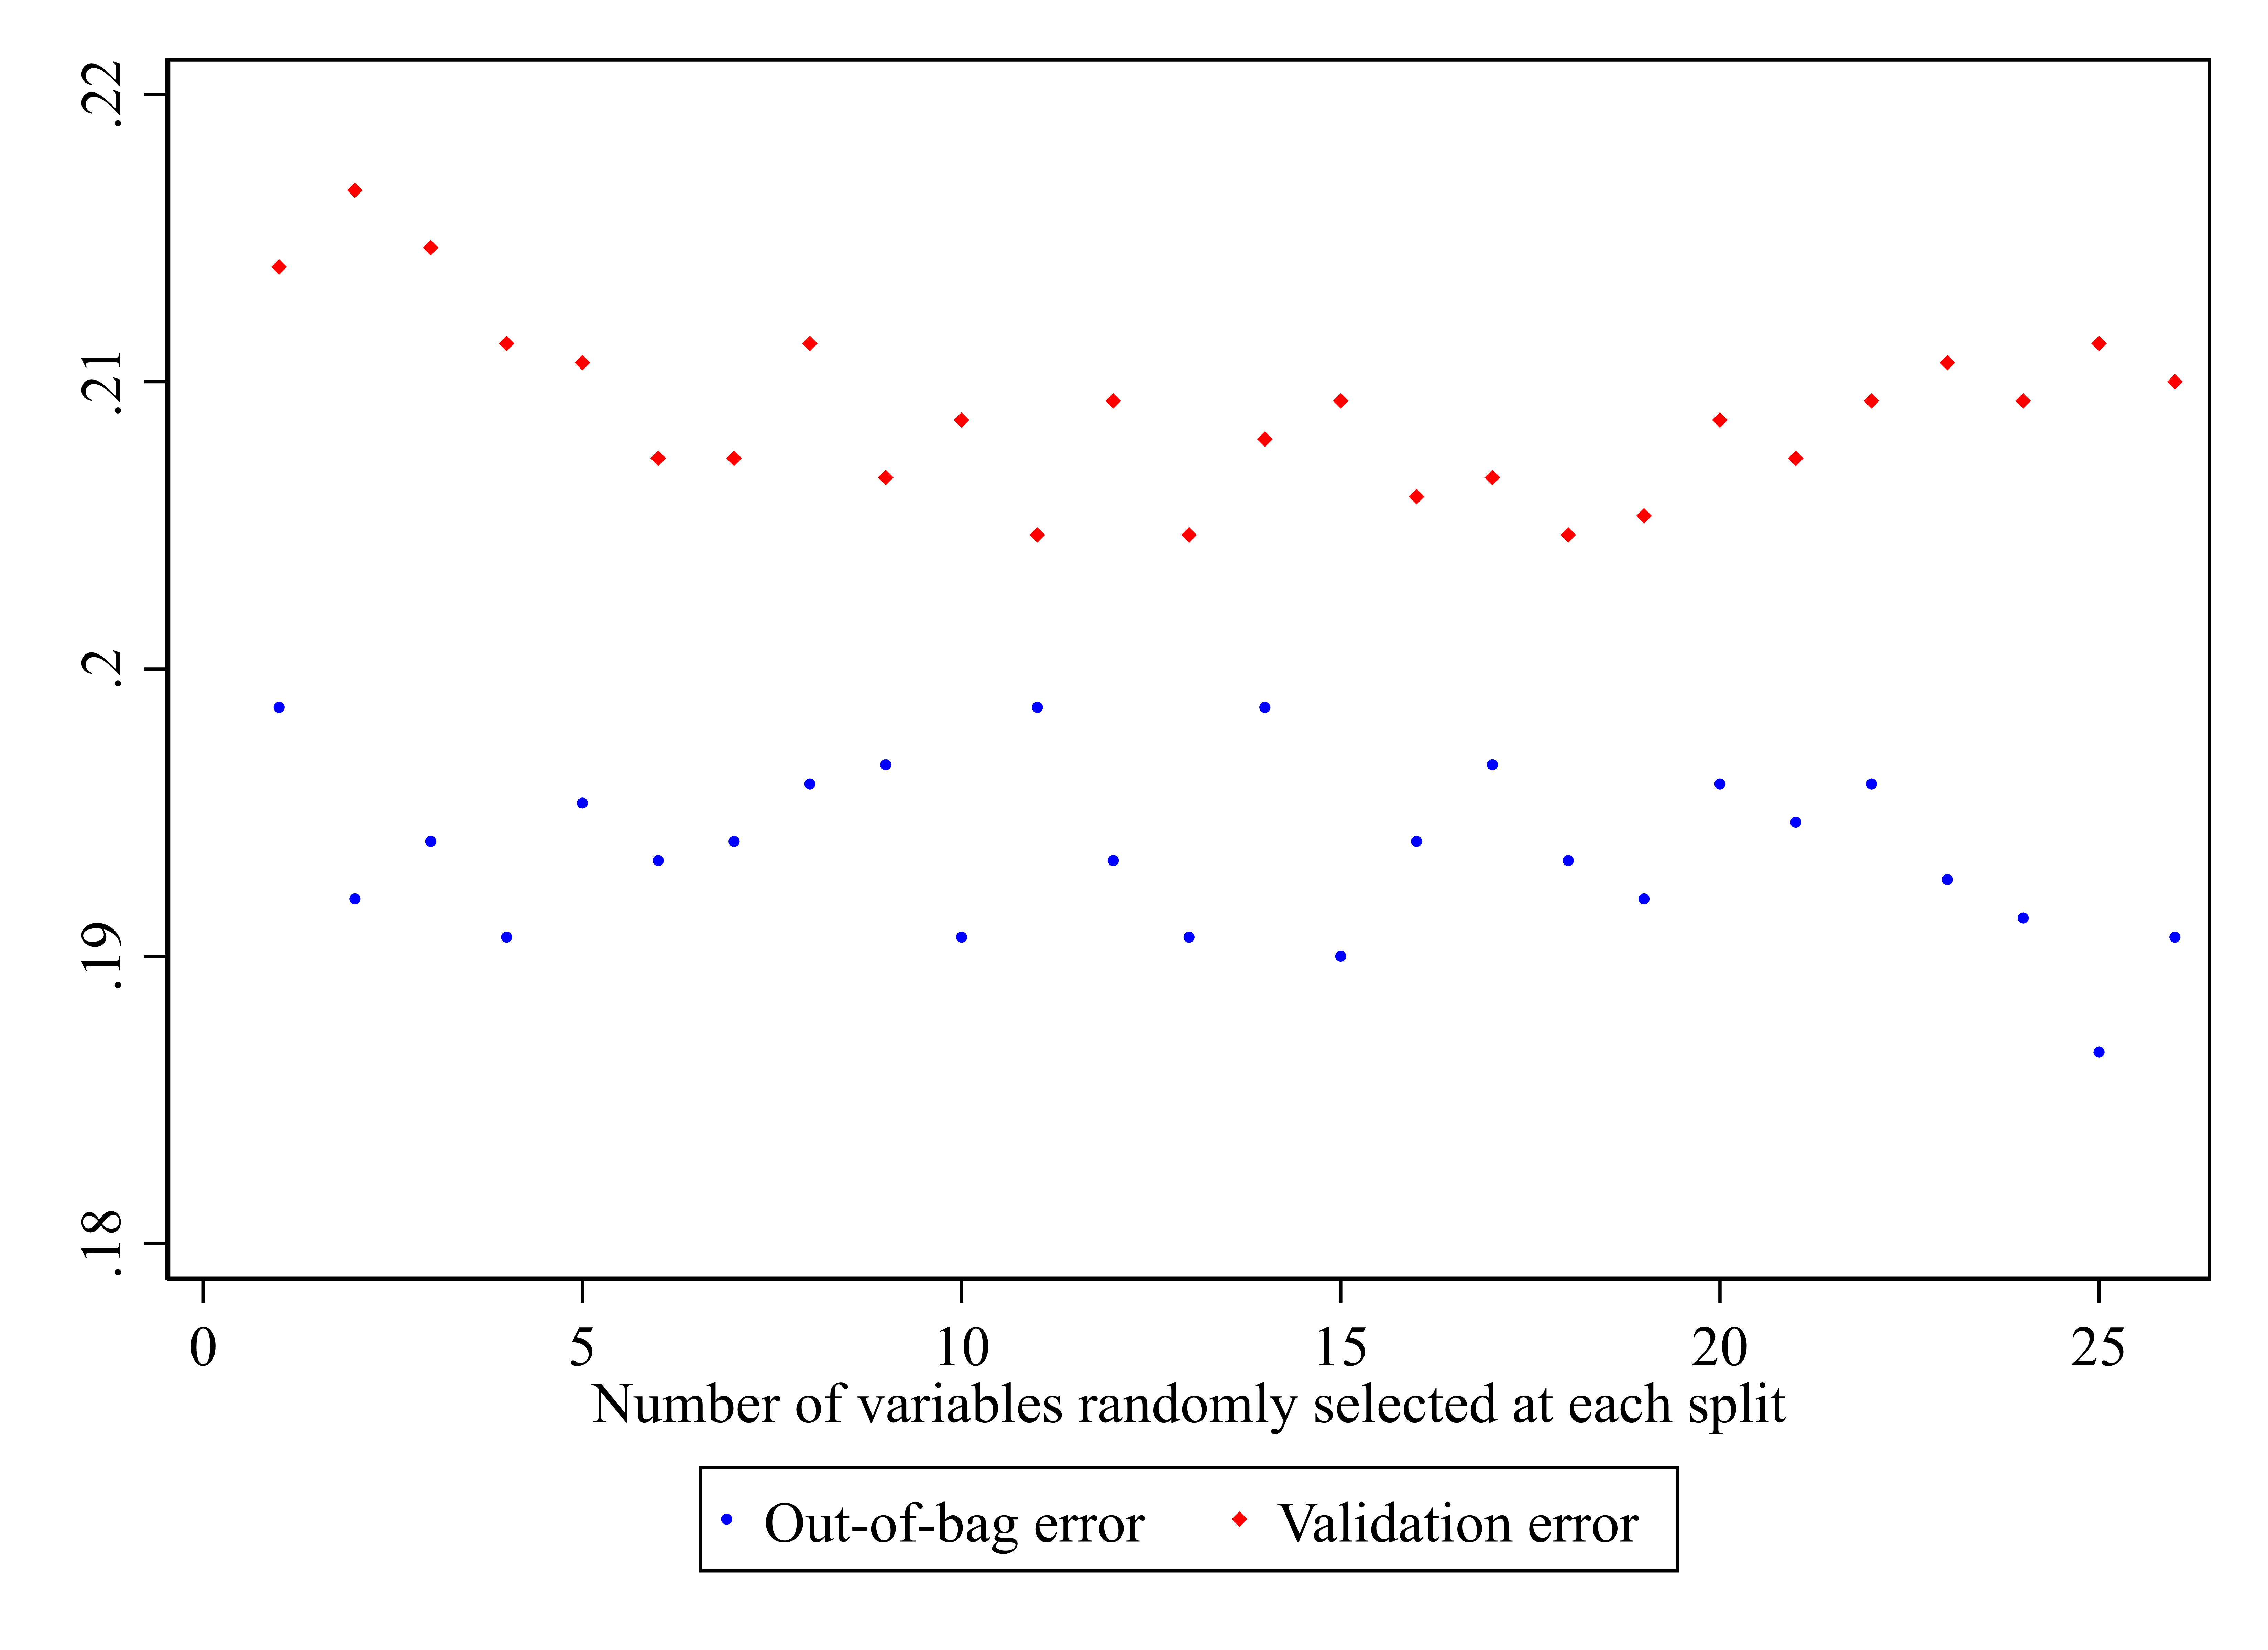 图 4：OOB 误差、验证误差与变量数量图